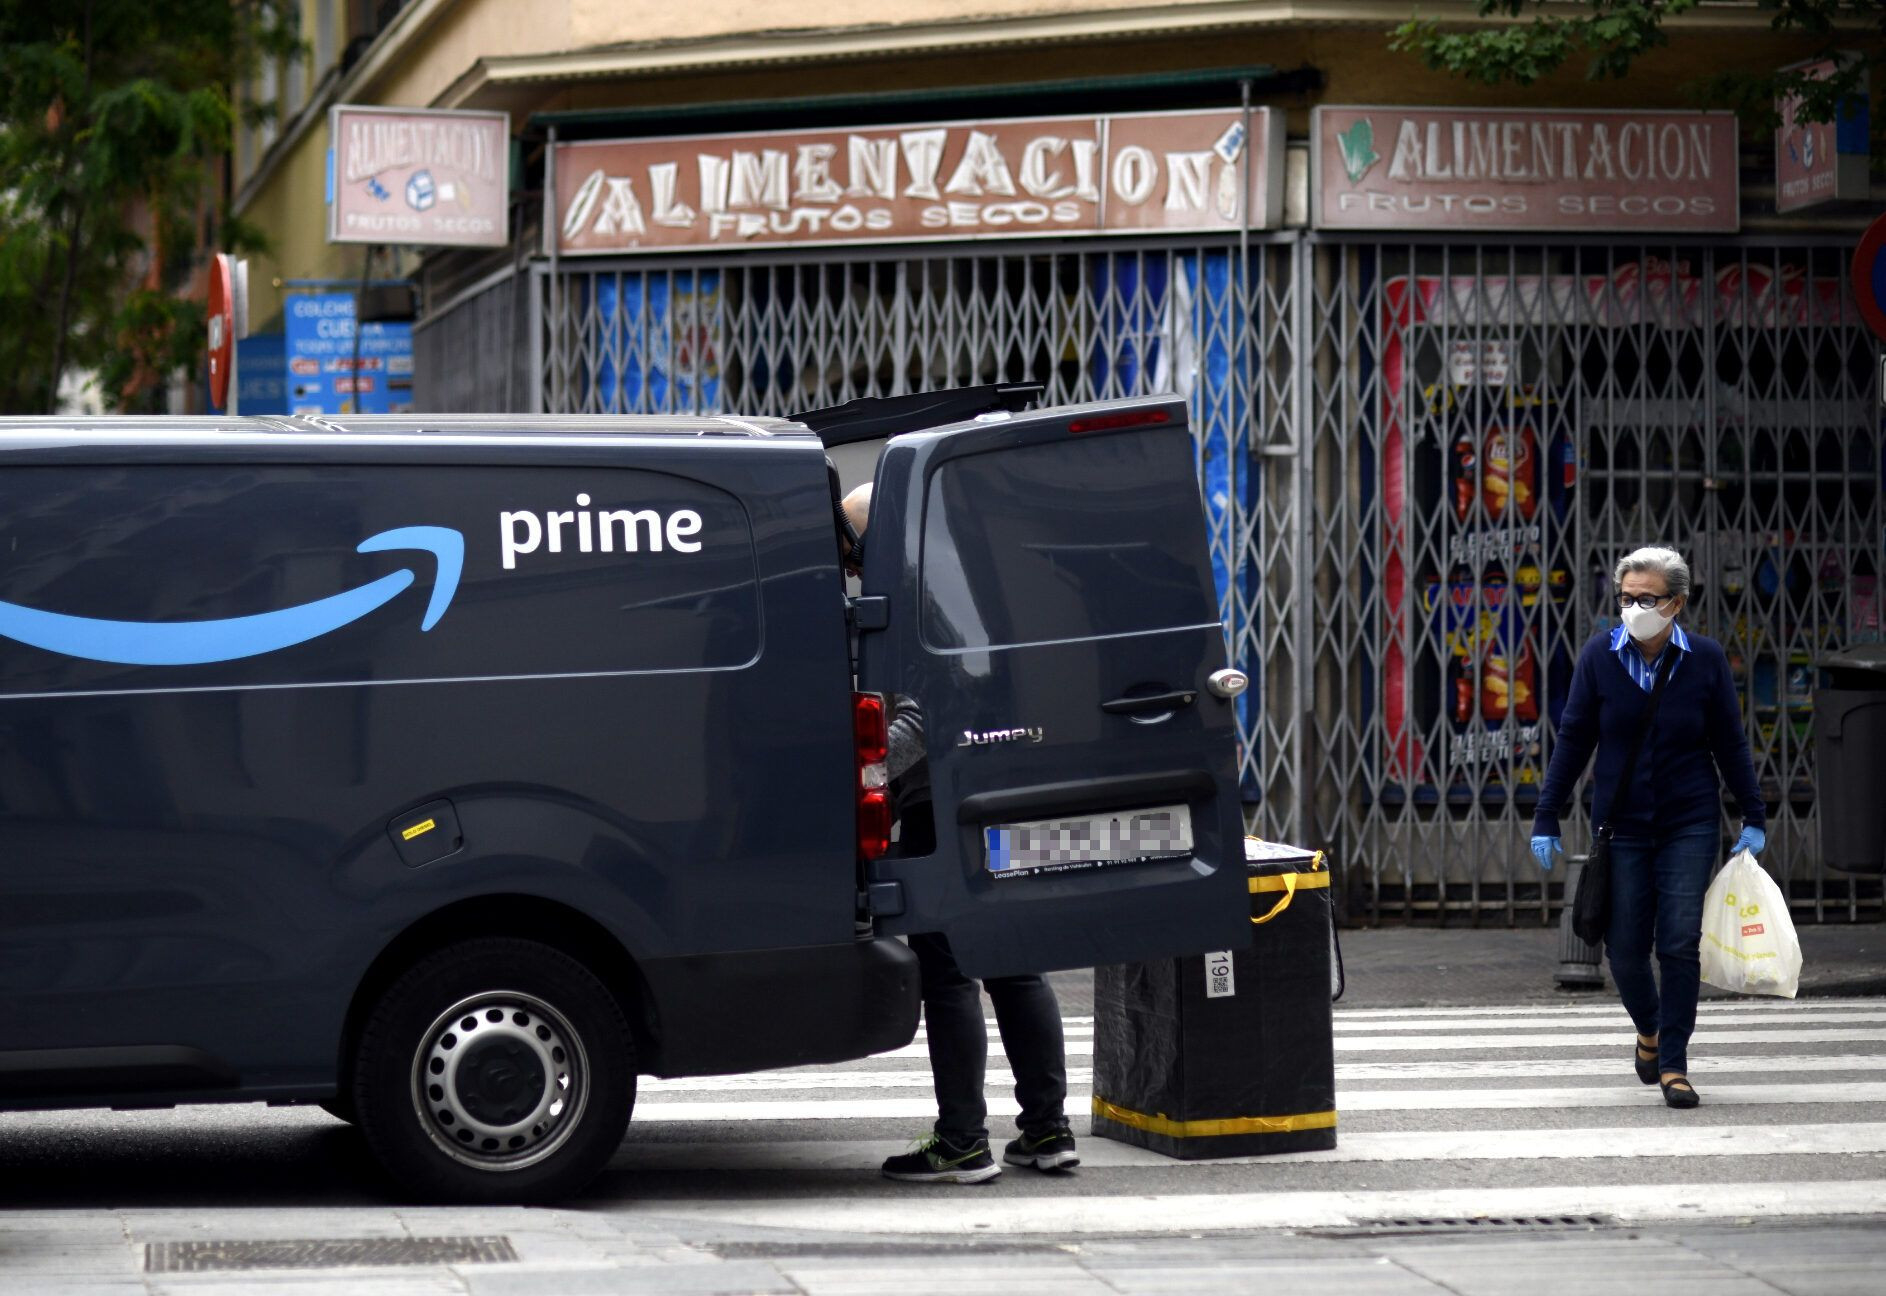 Una furgoneta de reparto de Amazon en una imagen de archivo / EUROPA PRESS